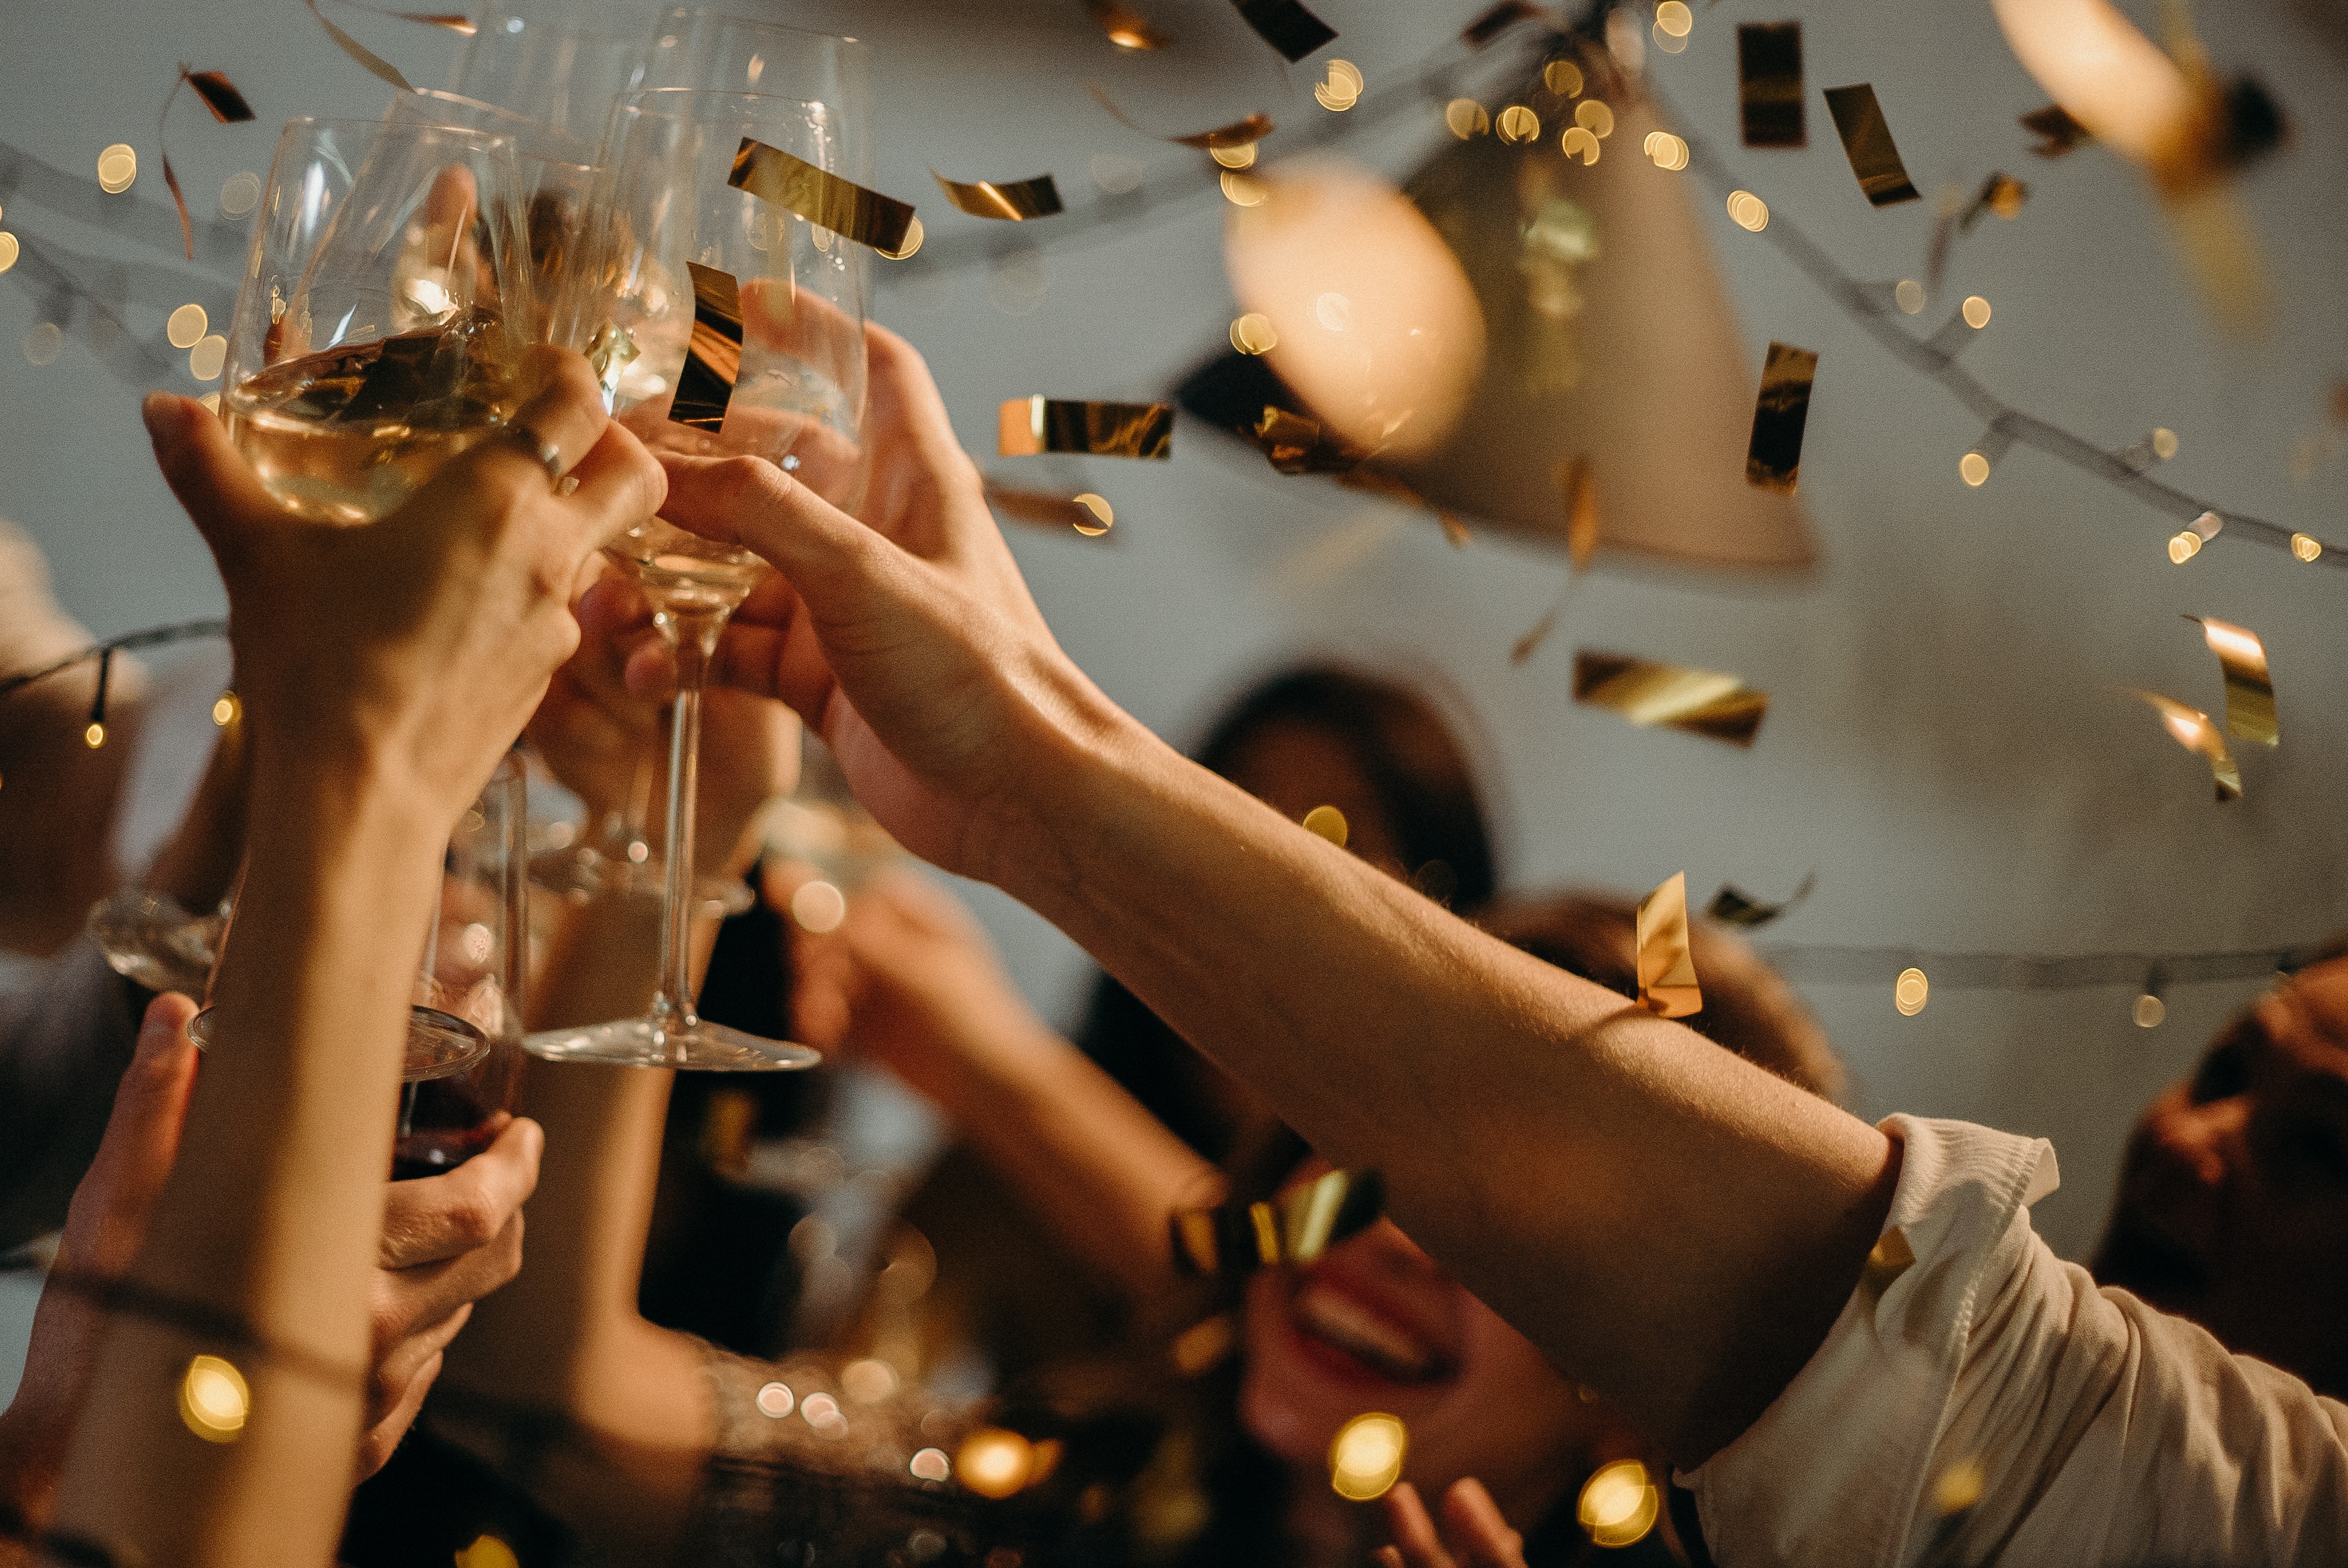 Champagne rất phù hợp để uống trước khai vị bữa tiệc